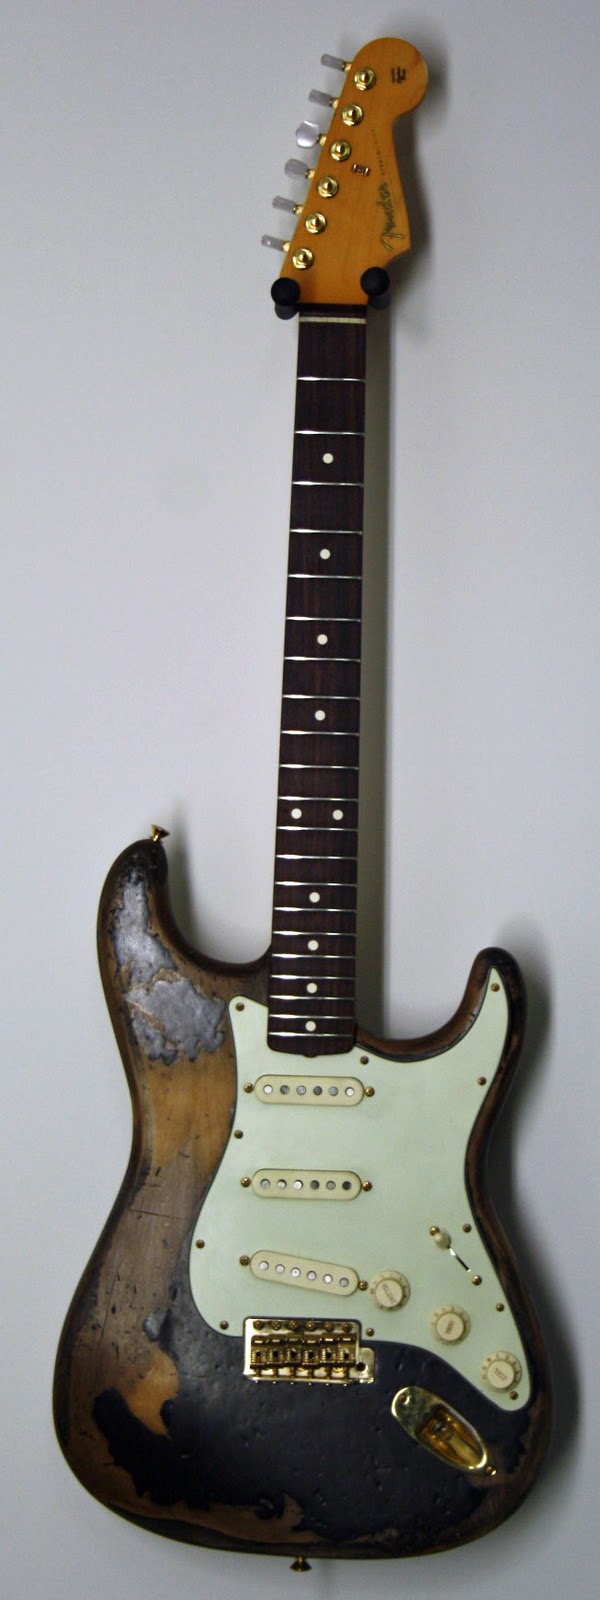 John Mayer Guitars Collection